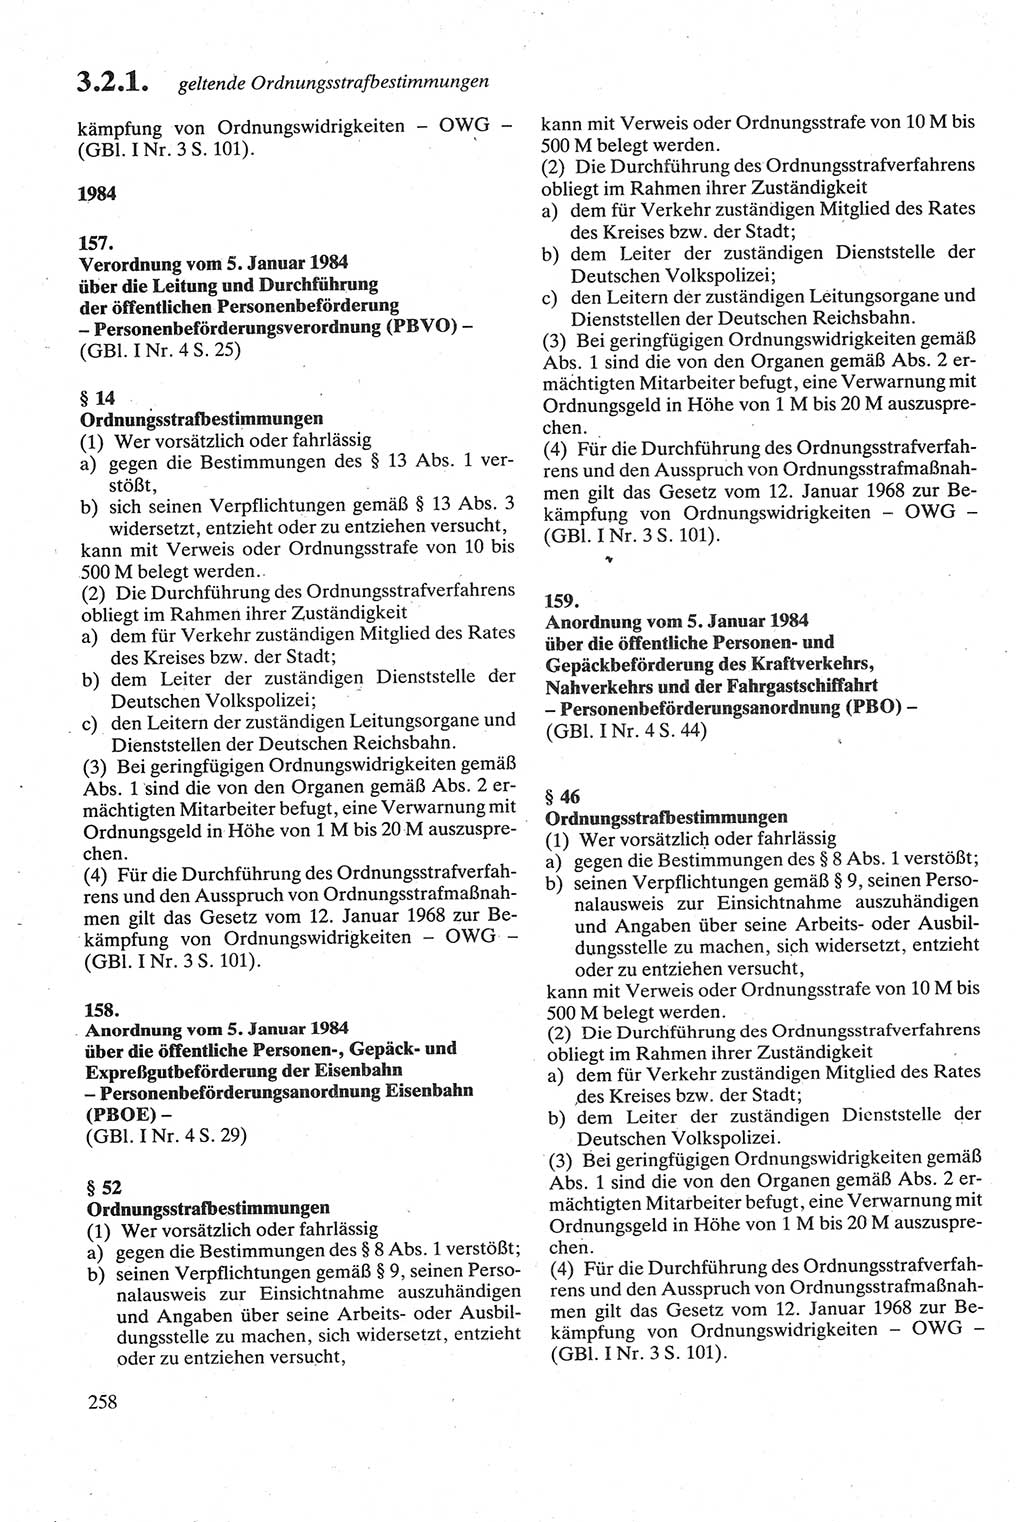 Strafgesetzbuch (StGB) der Deutschen Demokratischen Republik (DDR) sowie angrenzende Gesetze und Bestimmungen 1979, Seite 258 (StGB DDR Ges. Best. 1979, S. 258)